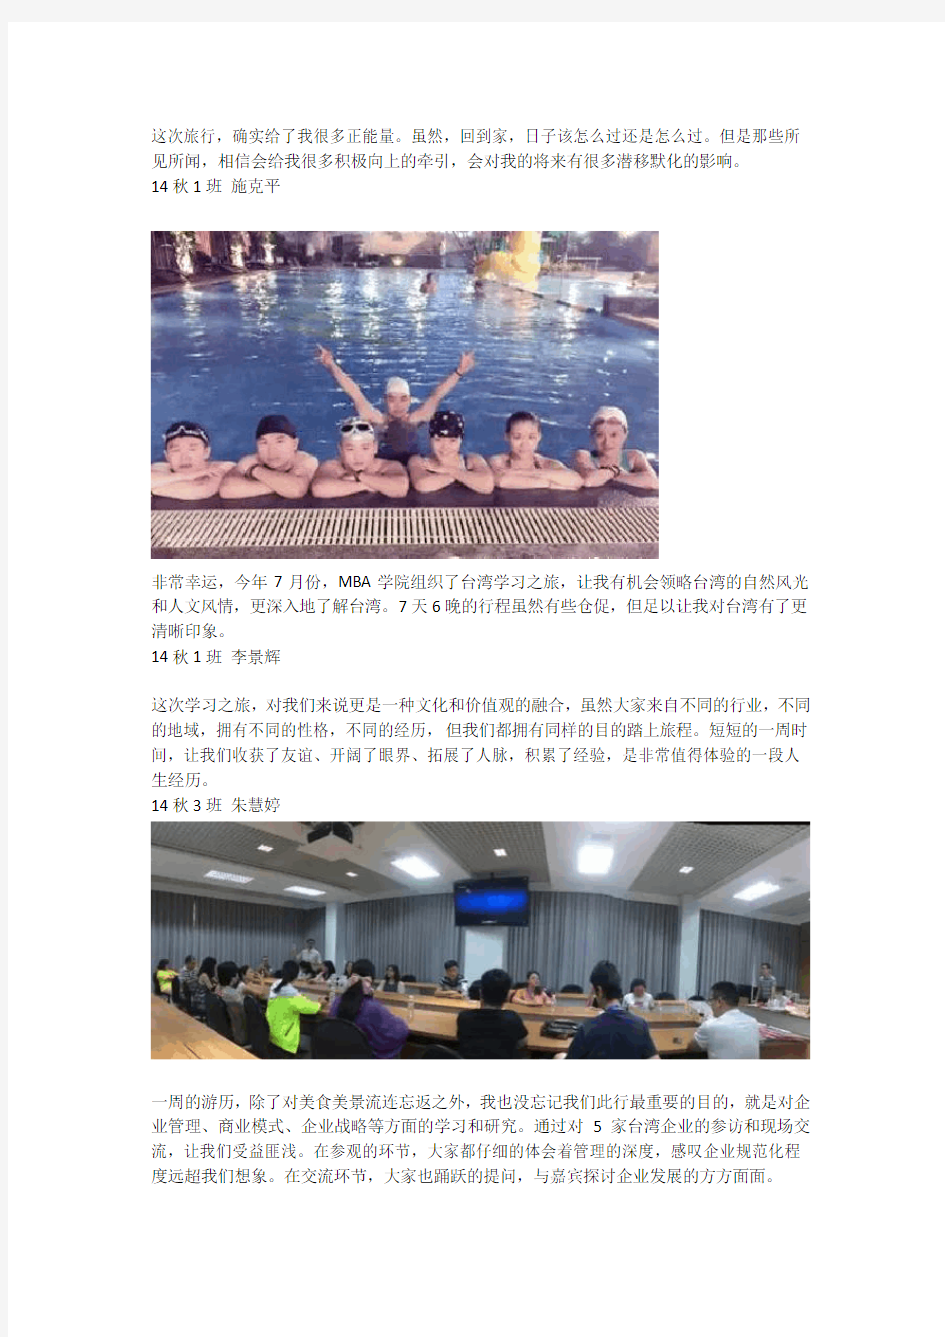 台湾学习考察之旅MBA活动报告